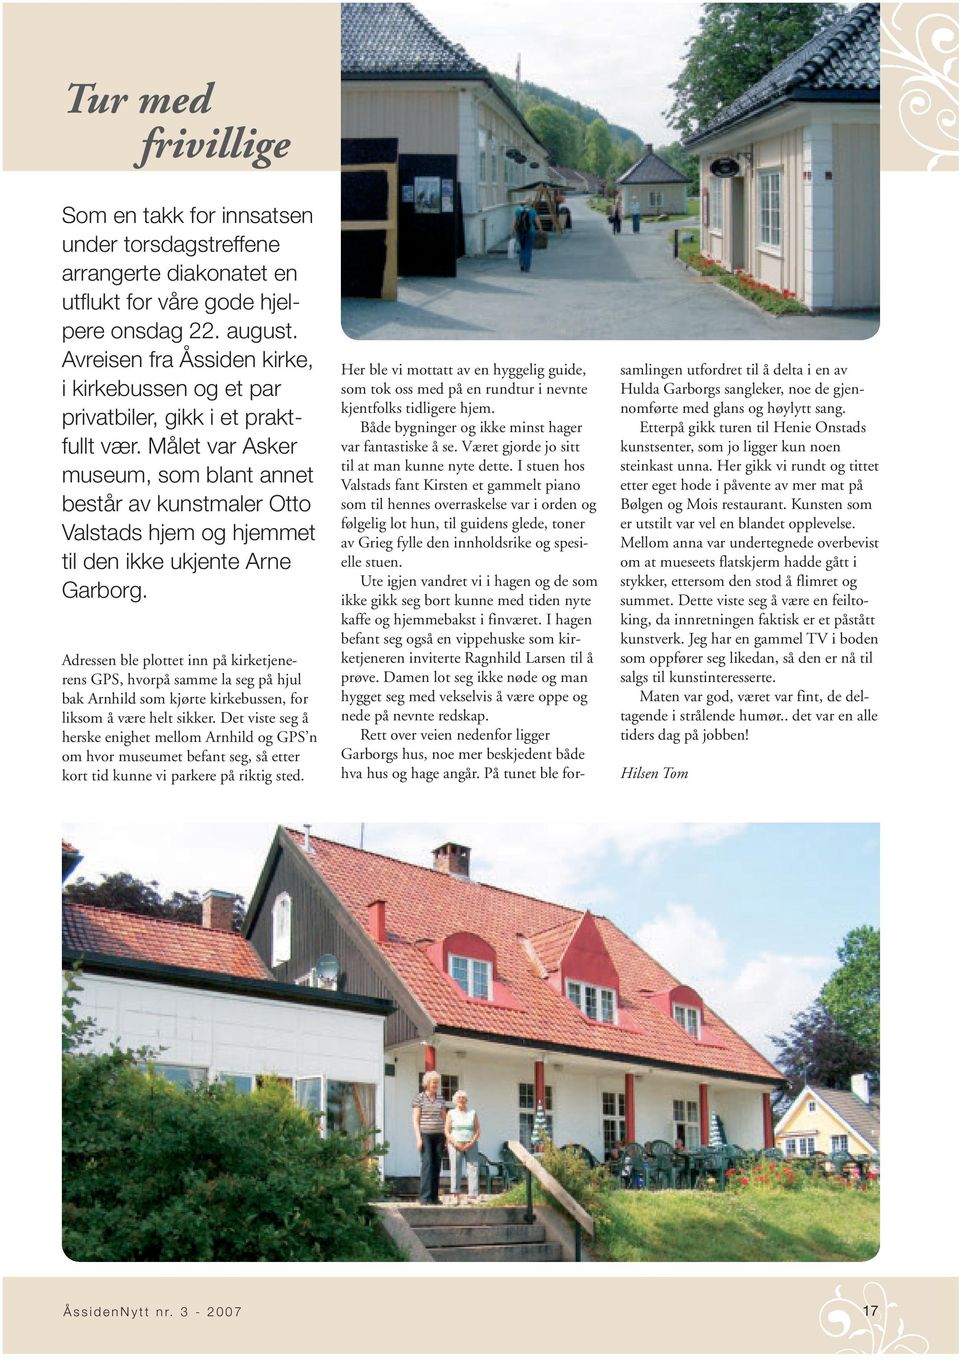 Målet var Asker museum, som blant annet består av kunstmaler Otto Valstads hjem og hjemmet til den ikke ukjente Arne Garborg.